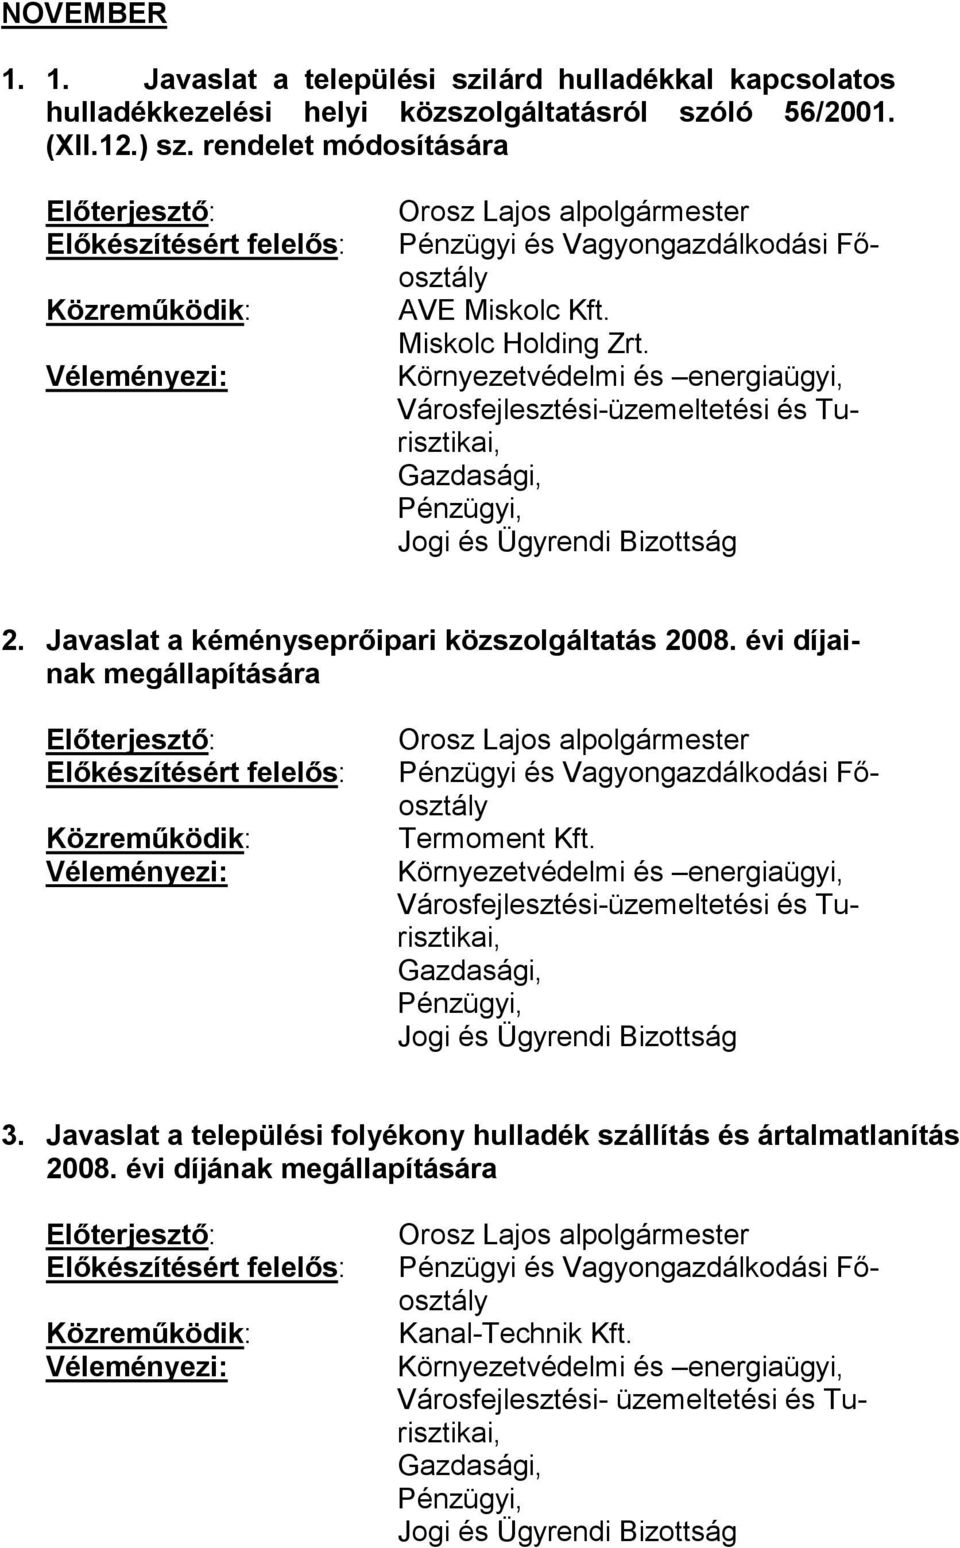 Javaslat a kéményseprőipari közszolgáltatás 2008. évi díjainak megállapítására Orosz Lajos alpolgármester Termoment Kft. 3.